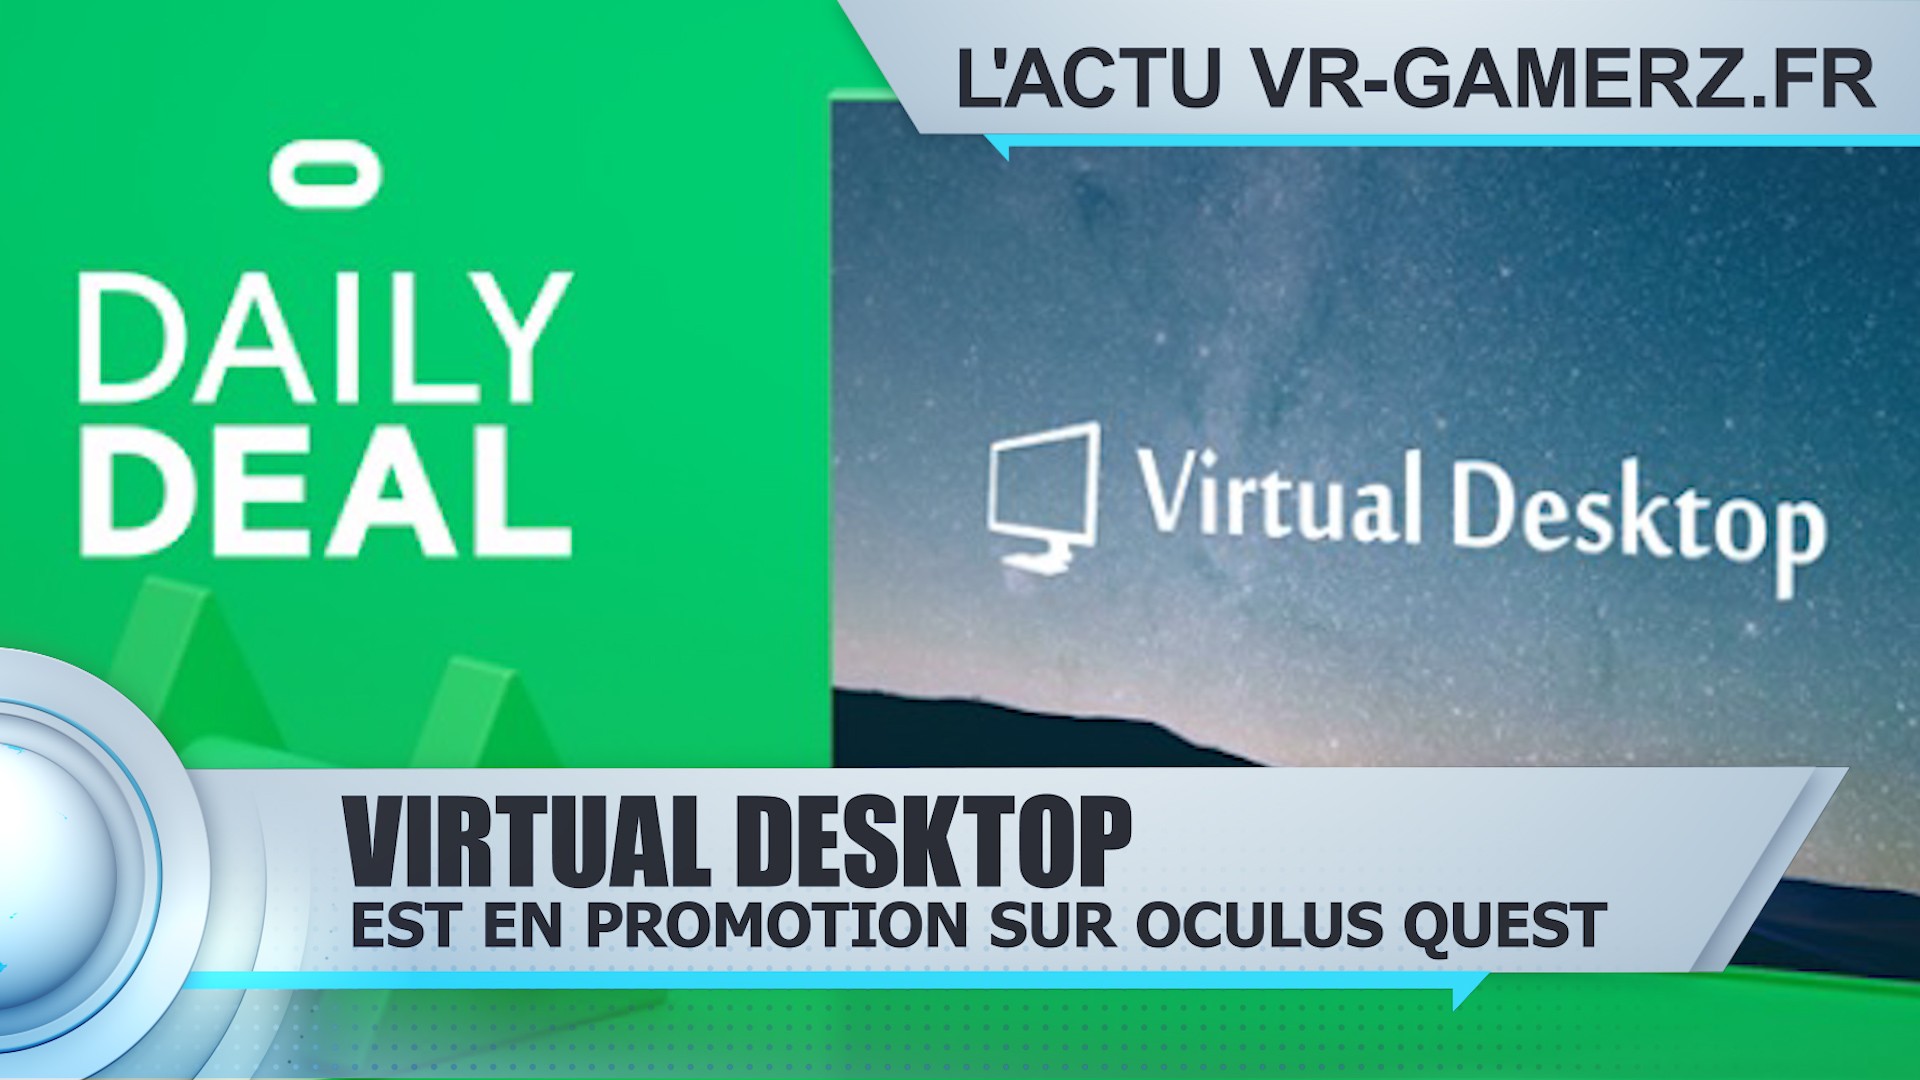 Virtual desktop est en promotion sur Oculus quest !